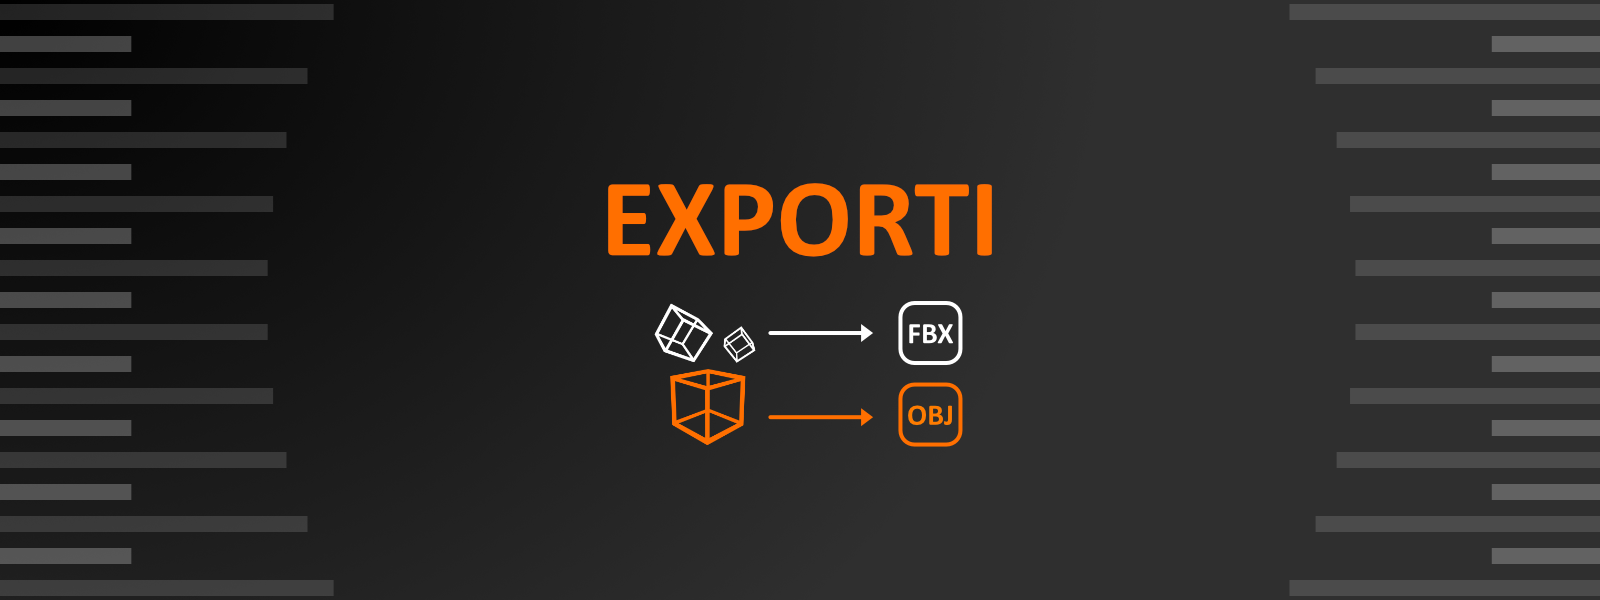 Exporti